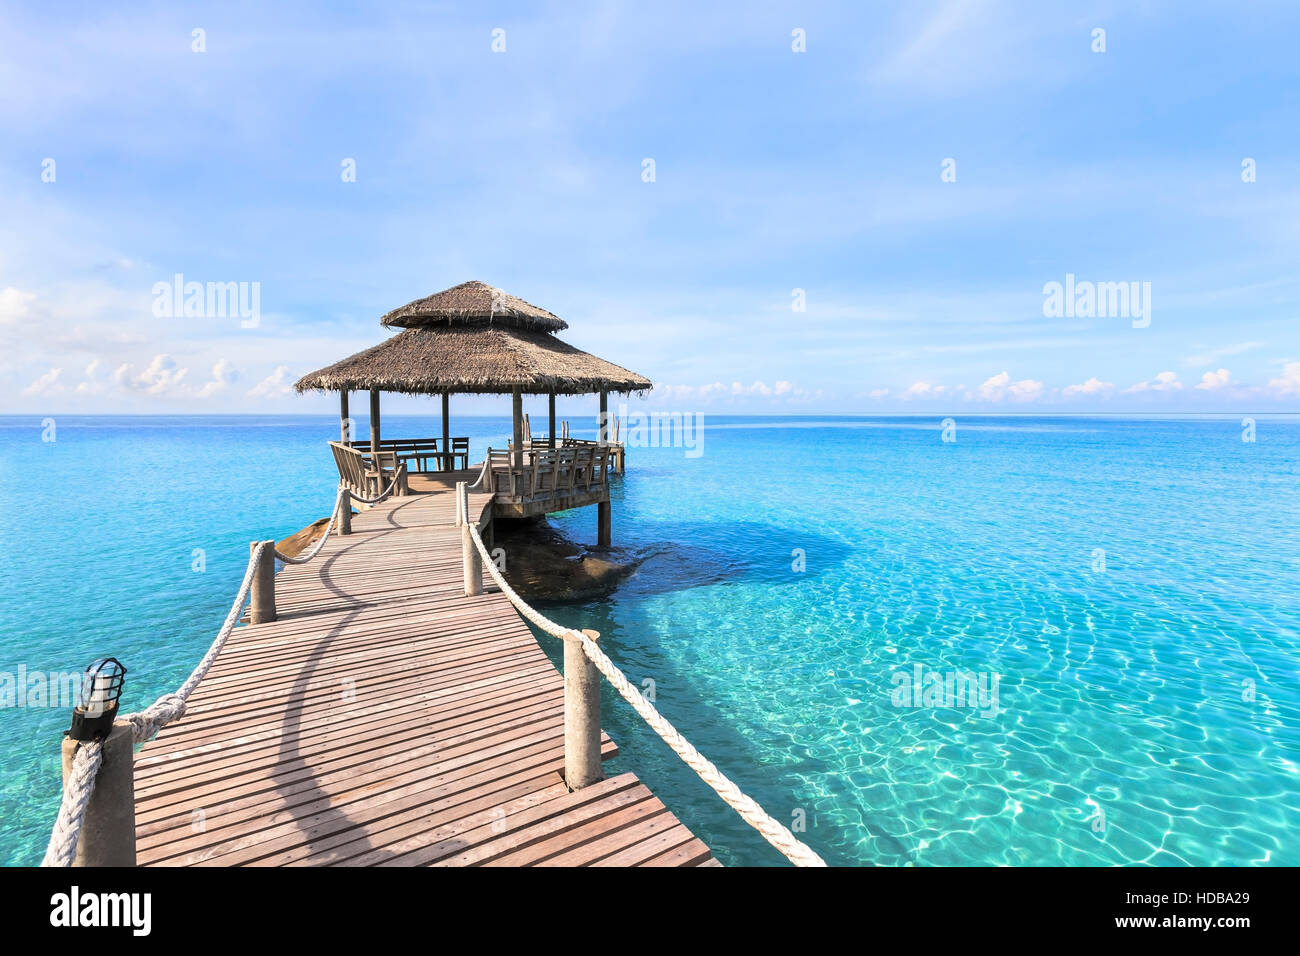 Hermoso paisaje de playa tropical con muelle de madera y transparentes aguas color turquesa, paraíso travel destino de vacaciones Foto de stock